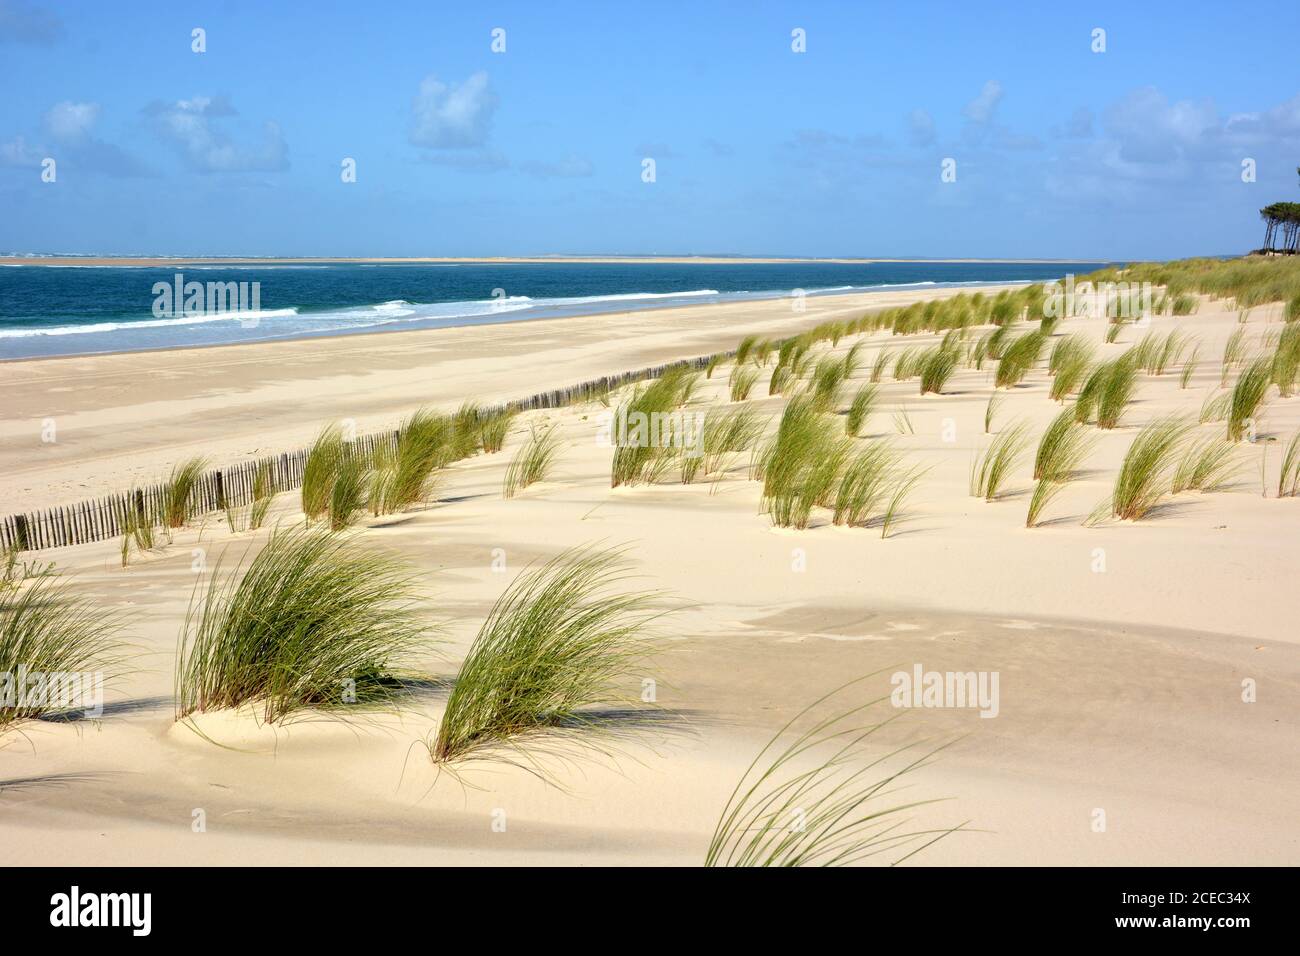 Frankreich, Aquitaine, Gironde, Arcachon-Becken, die atlantikküste wird von einem riesigen Sandstrand mit Dünen und Vawes zum Surfen gesäumt gebildet. Stockfoto